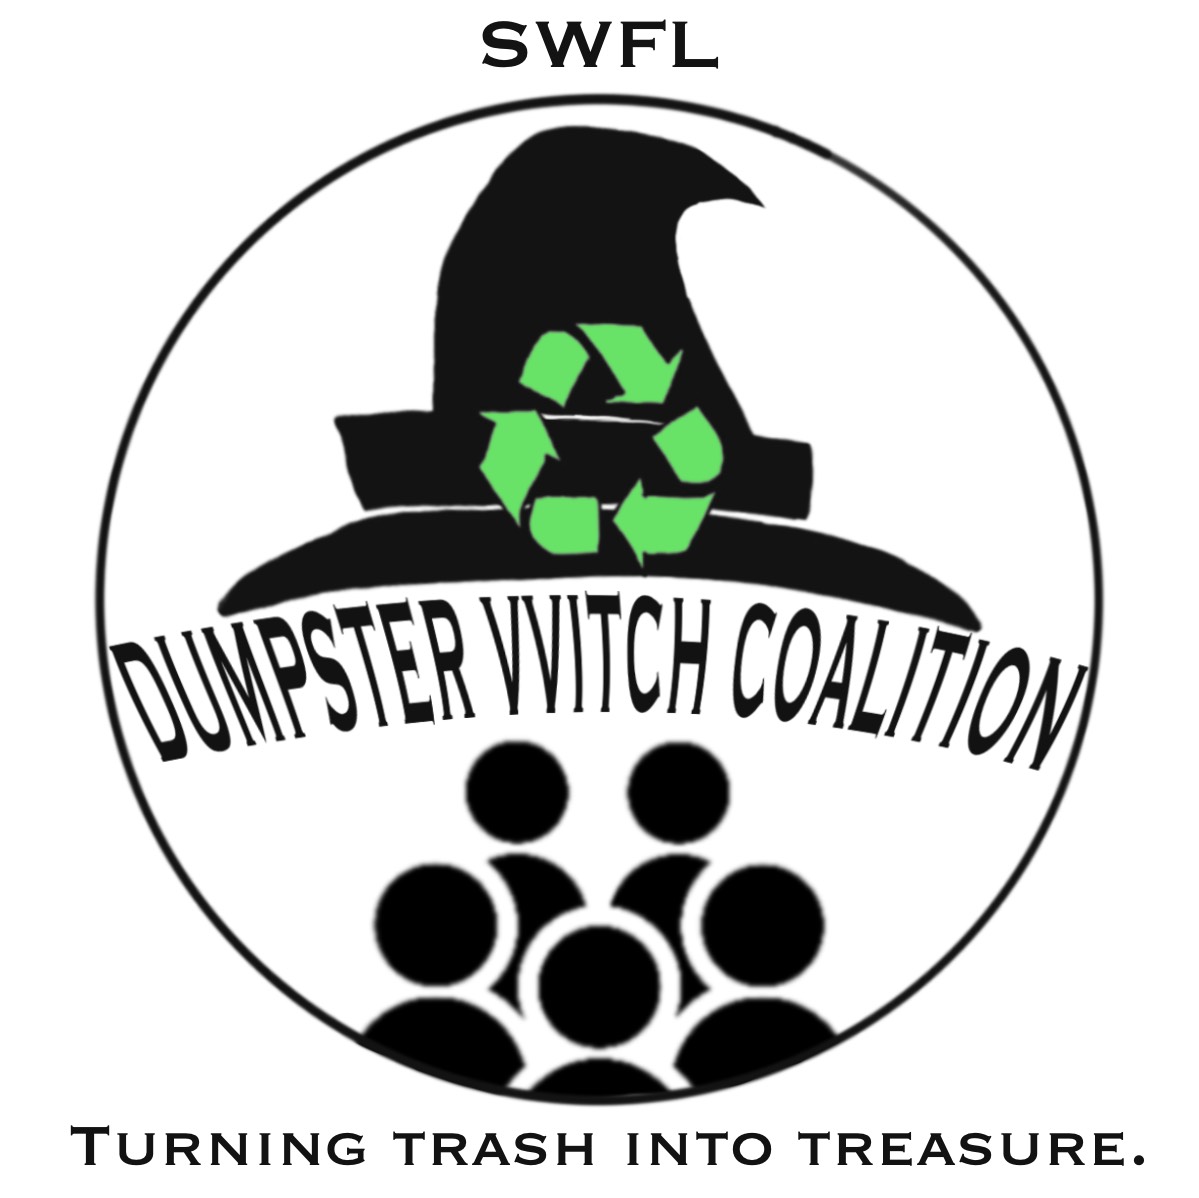 Dumpster VVitch Coalition